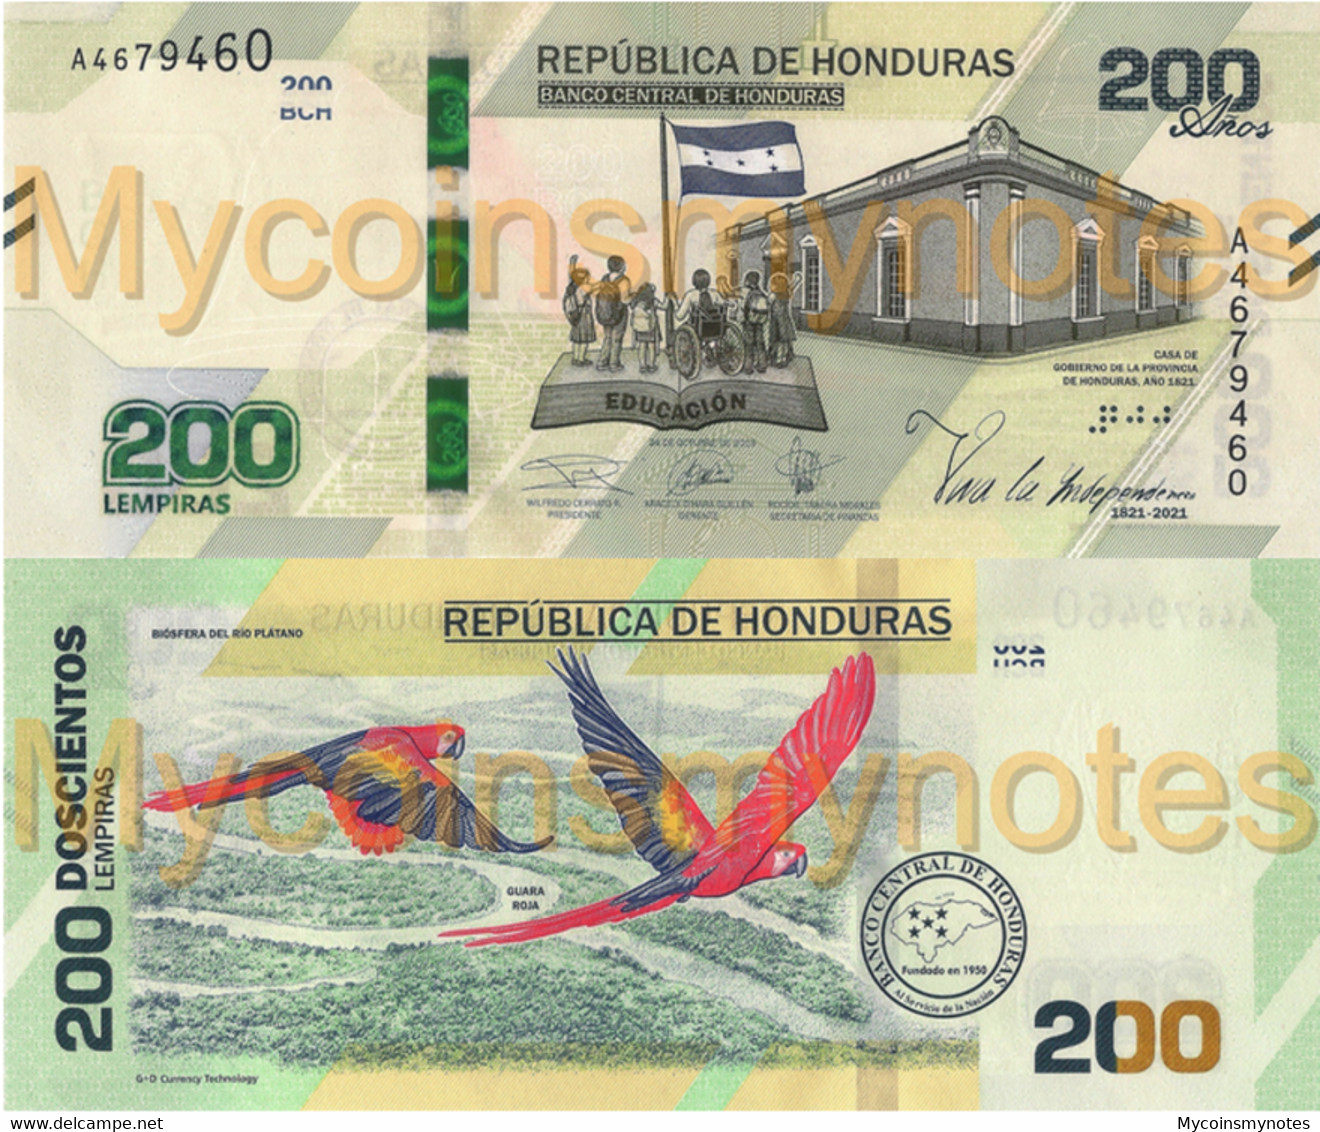 HONDURAS, 200 LEMPIRAS, 2021, PNew (Not Yet In Catalog), Commemorative 200 Years, UNC - Honduras